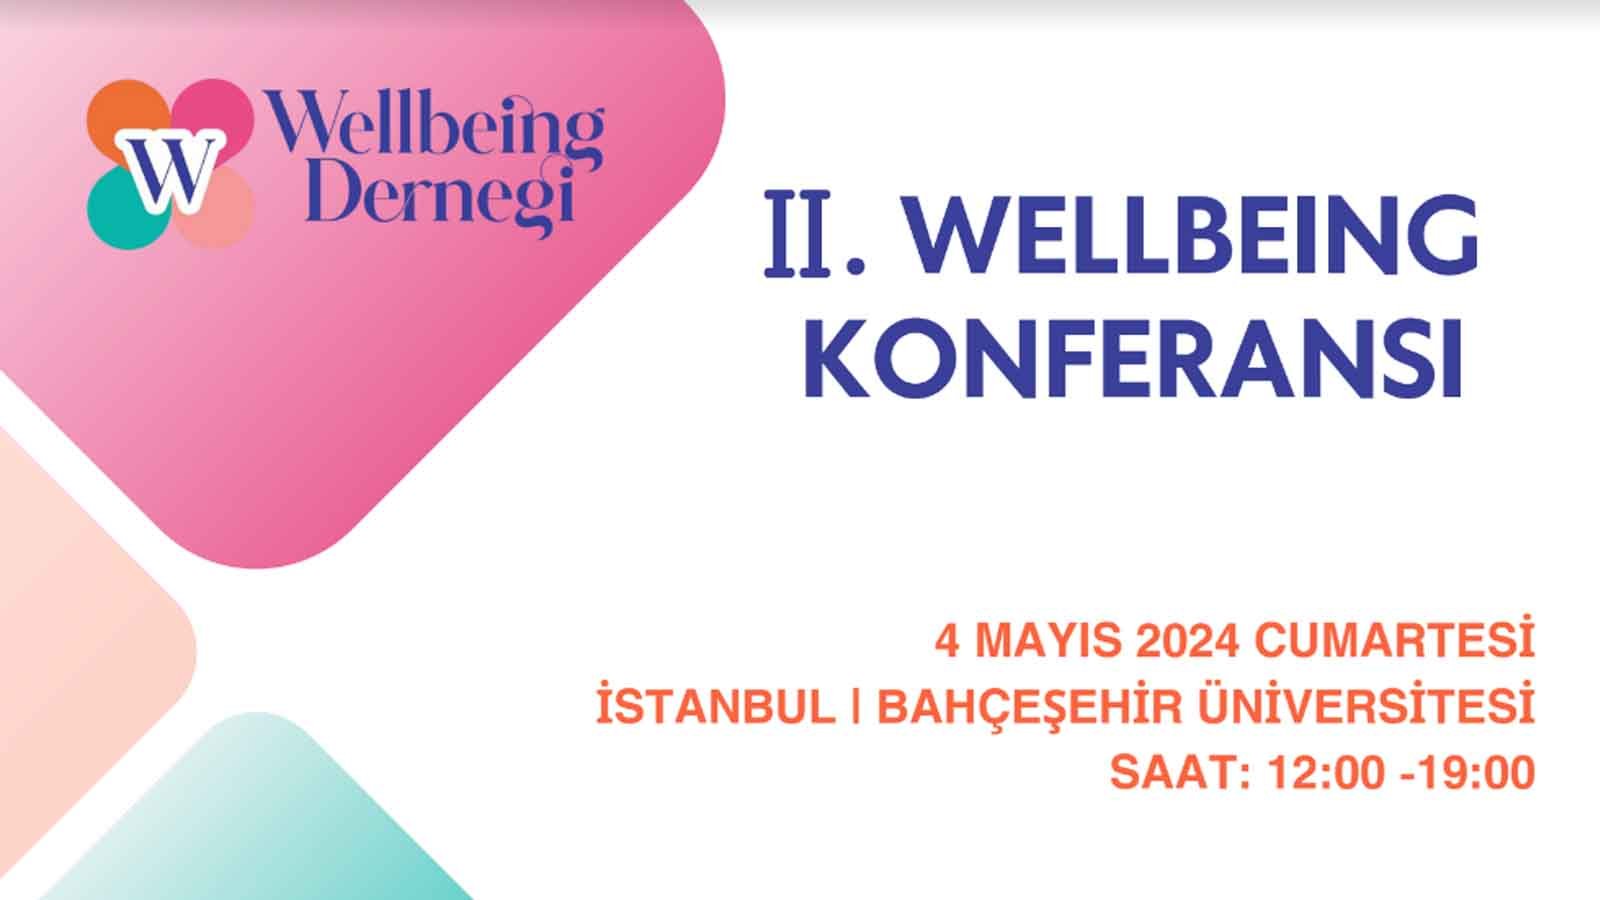 Wellbeing Konferansı 2024: İstanbul’da Sağlık ve Mutluluğun İzinde!